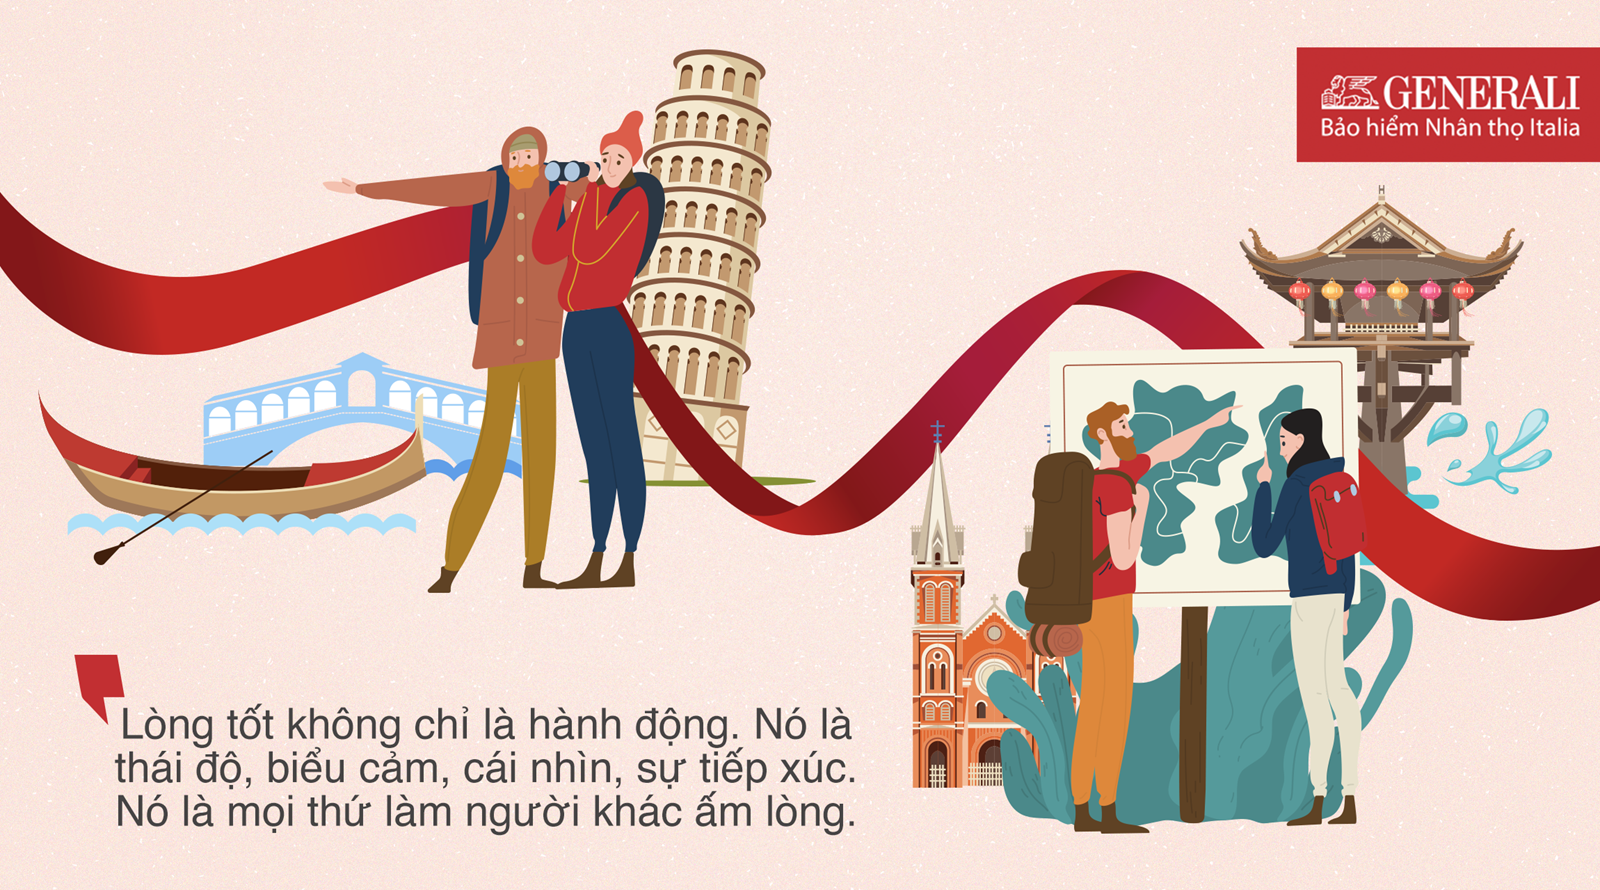 nét tương đồng trong văn hóa Việt Nam - Italia